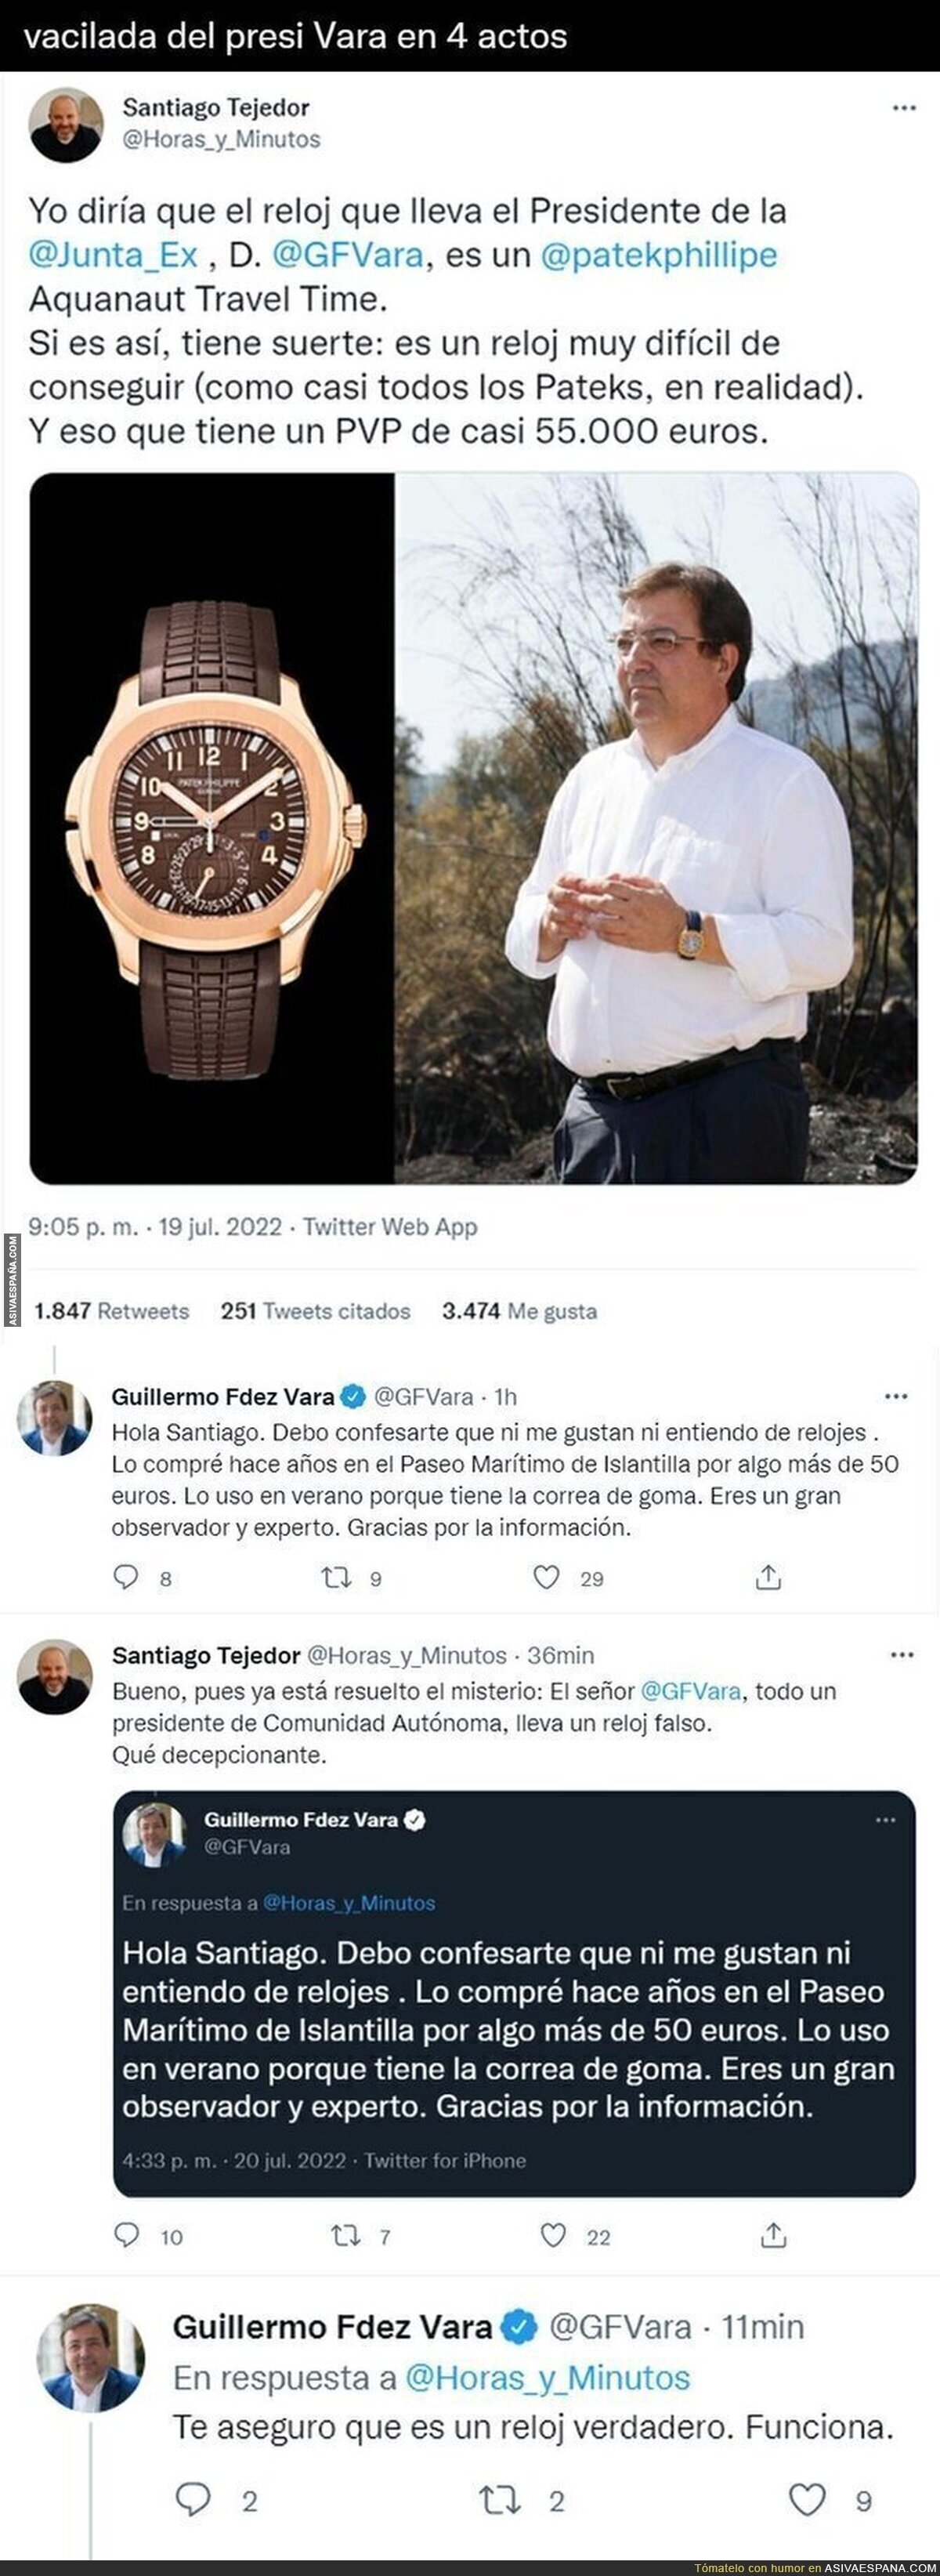 La tremenda vacilada del presidente Guillermo Fernández Vara a este experto de relojes que le acusa de usar relojes falsos